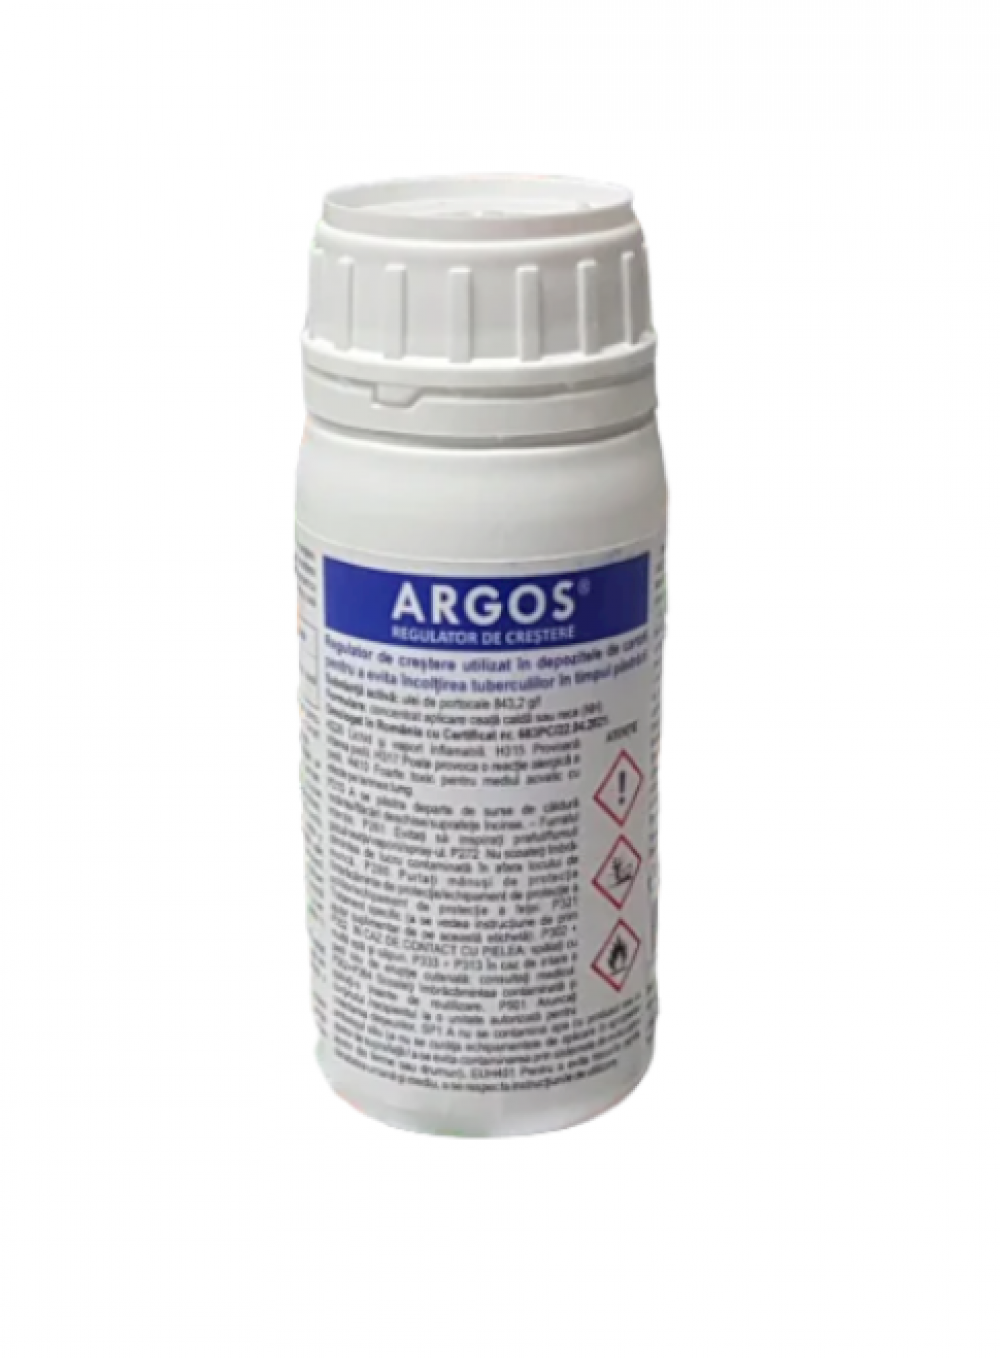 Regulator de crestere Argos 100 ml